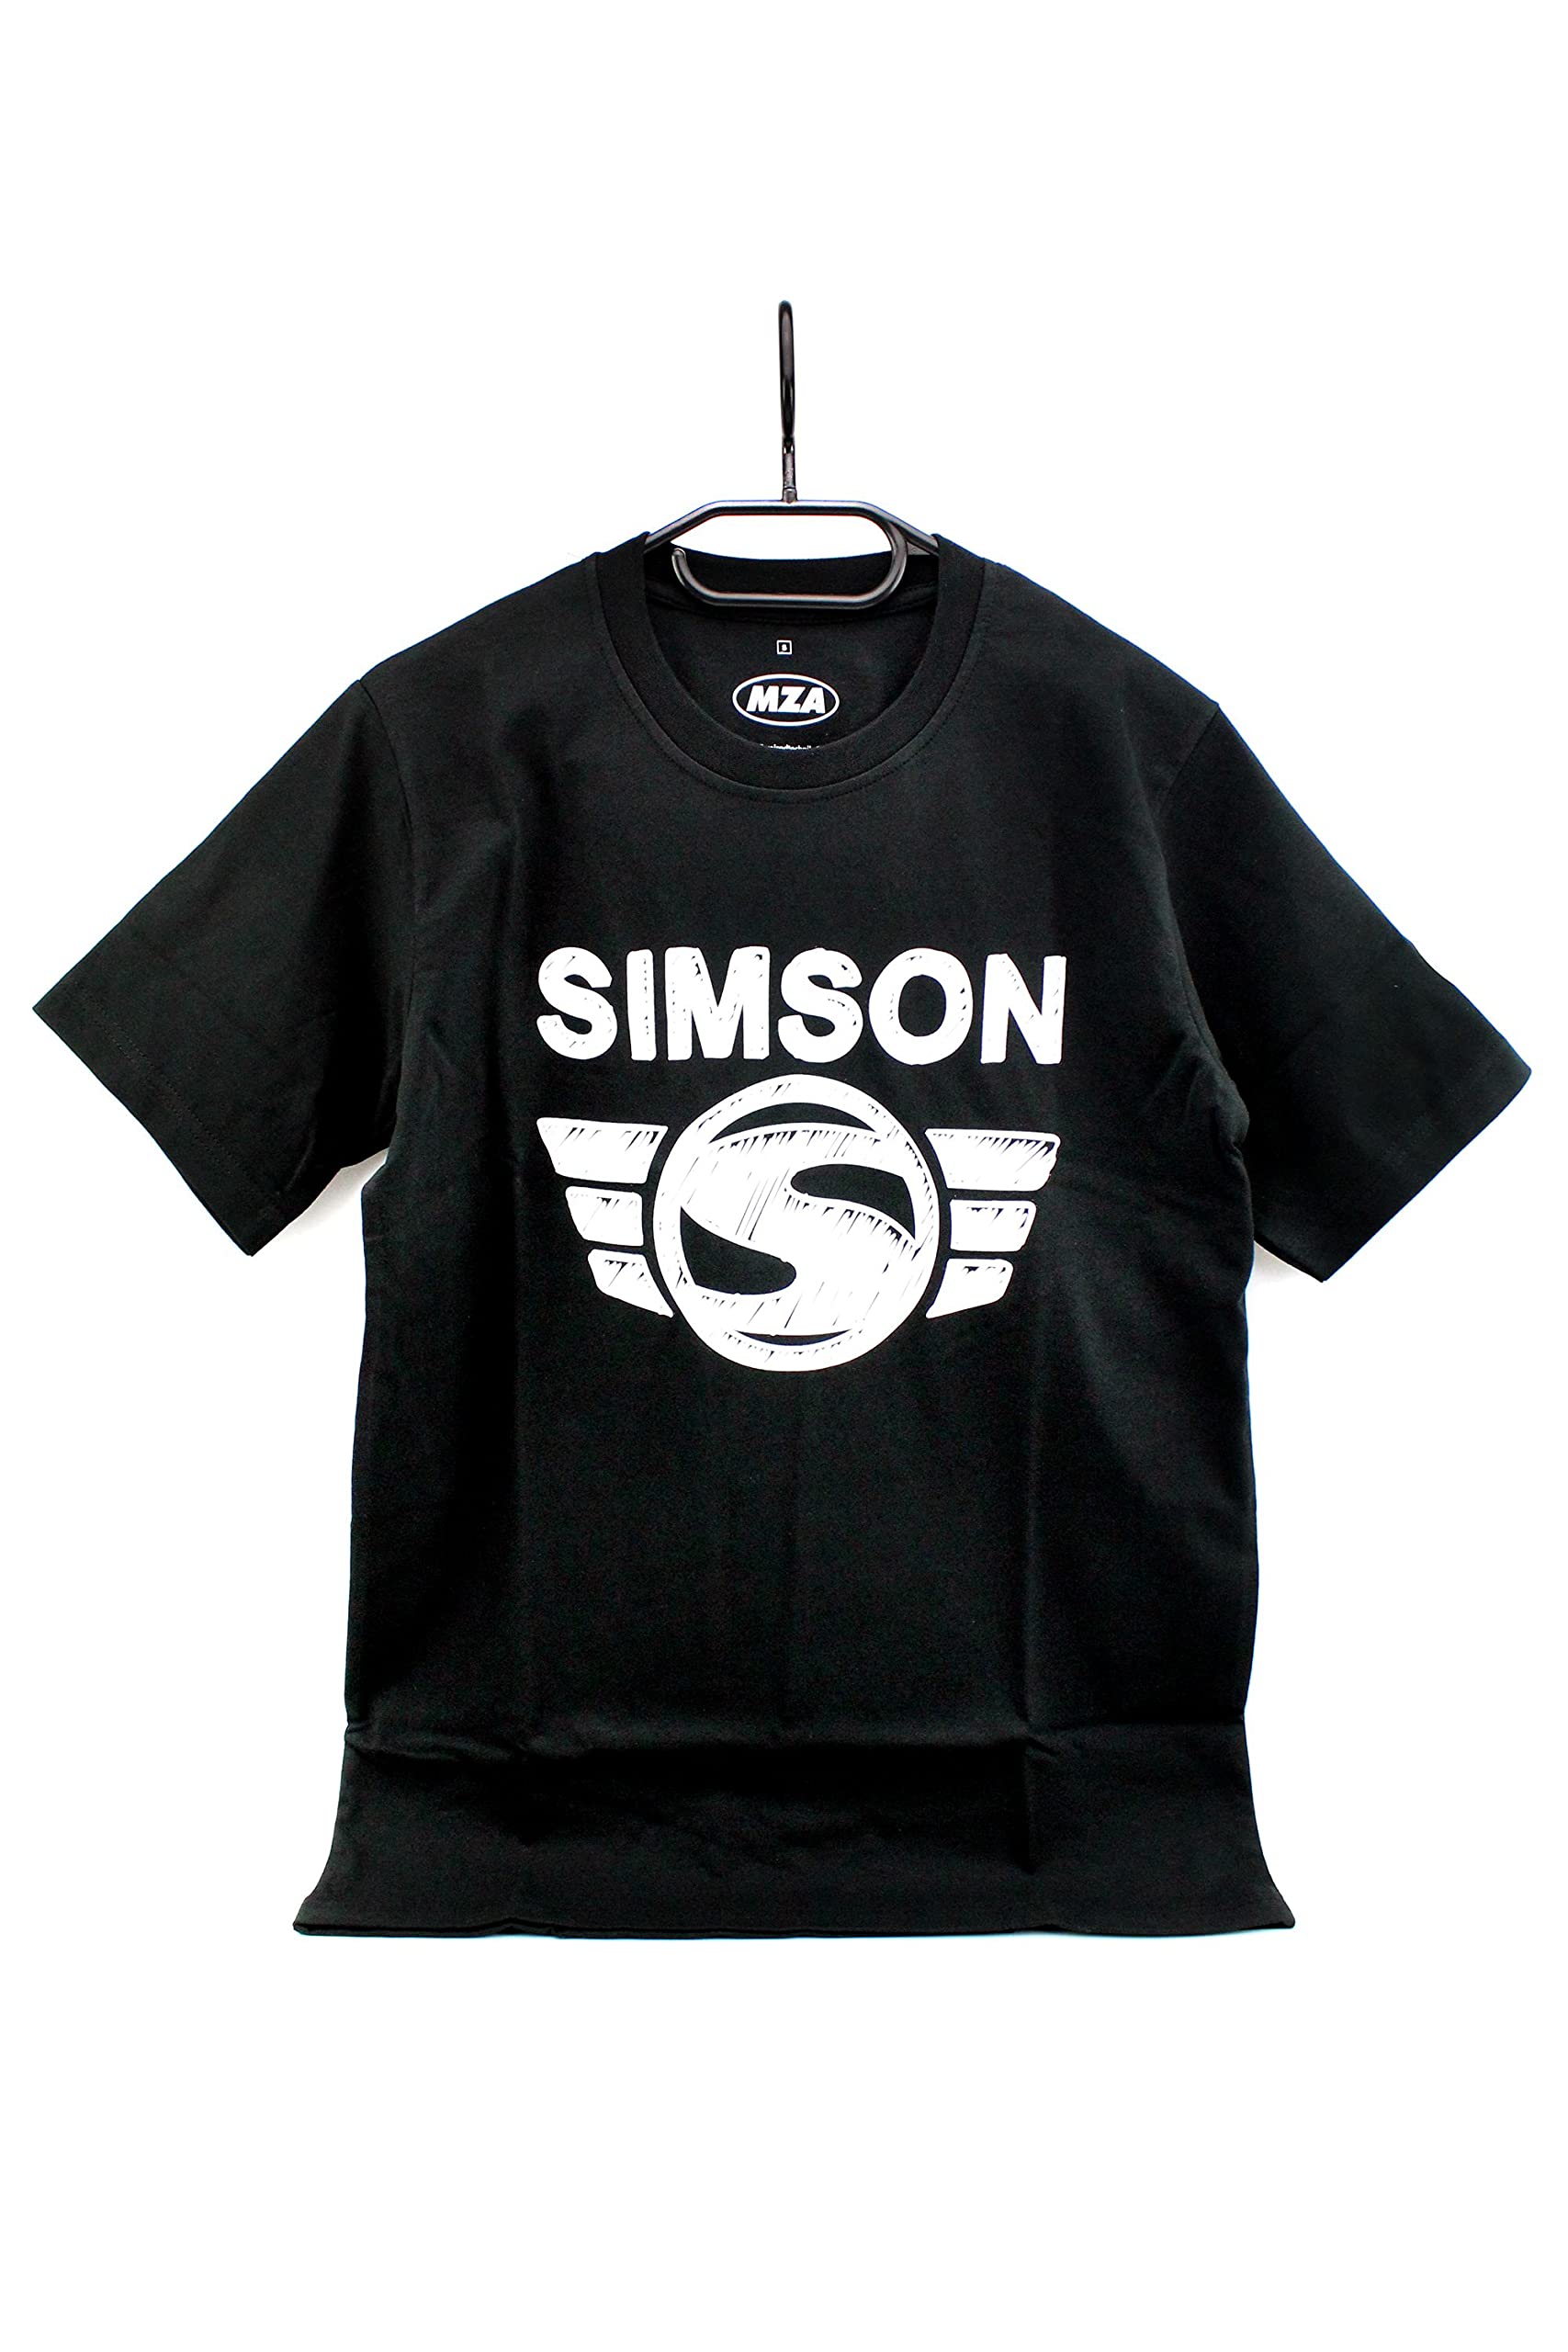 Simson T-Shirt, Shirt in Schwarz 'Simson Logo' aus 100% Baumwolle inkl. Bisomo Sticker, Größe:XS von MZA